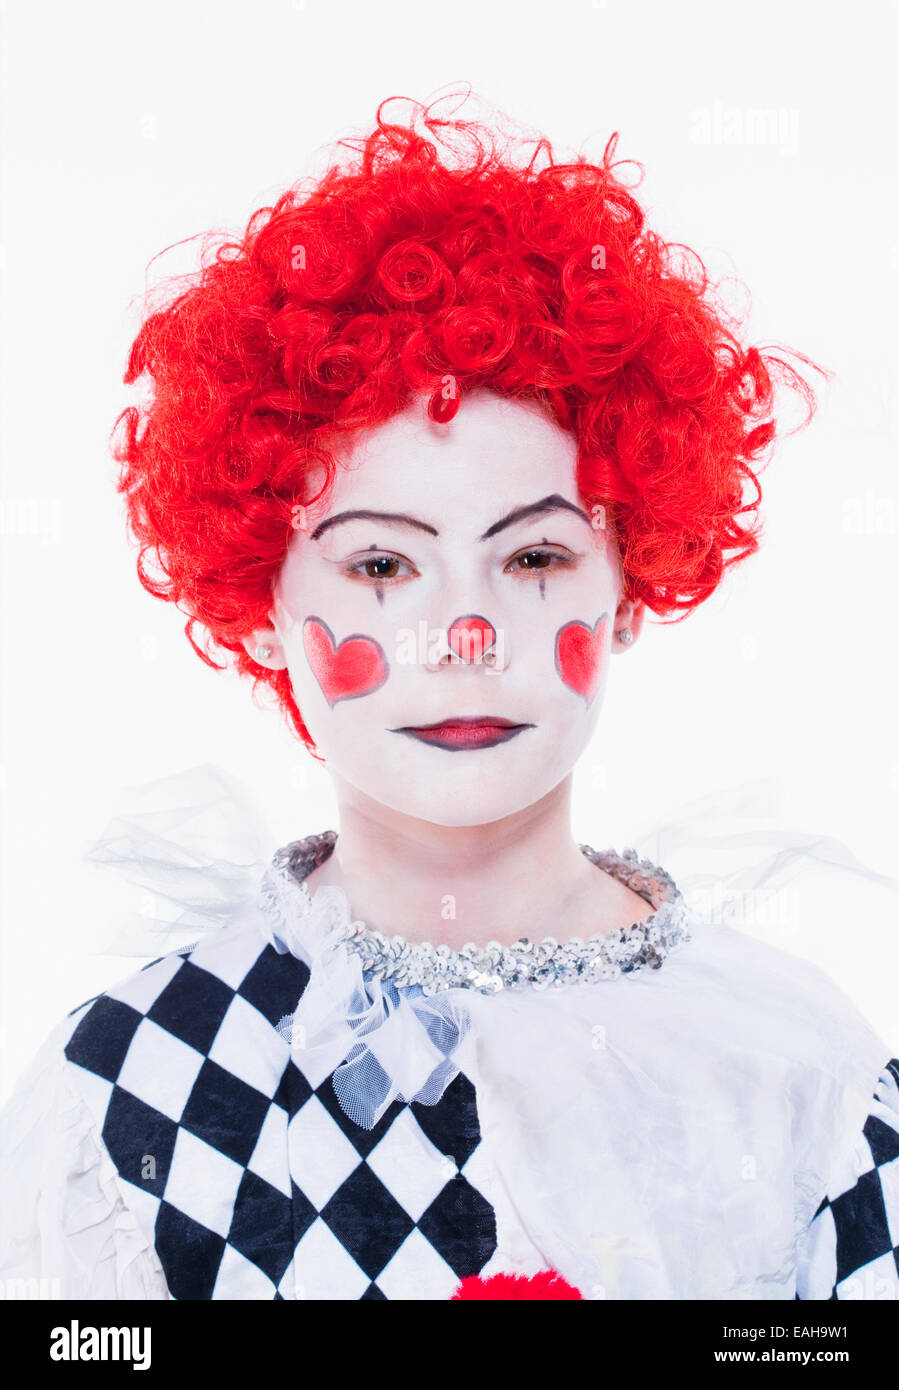 Petite fille en rouge perruque, maquillage et la tenue qui se fait passer pour un clown. Banque D'Images